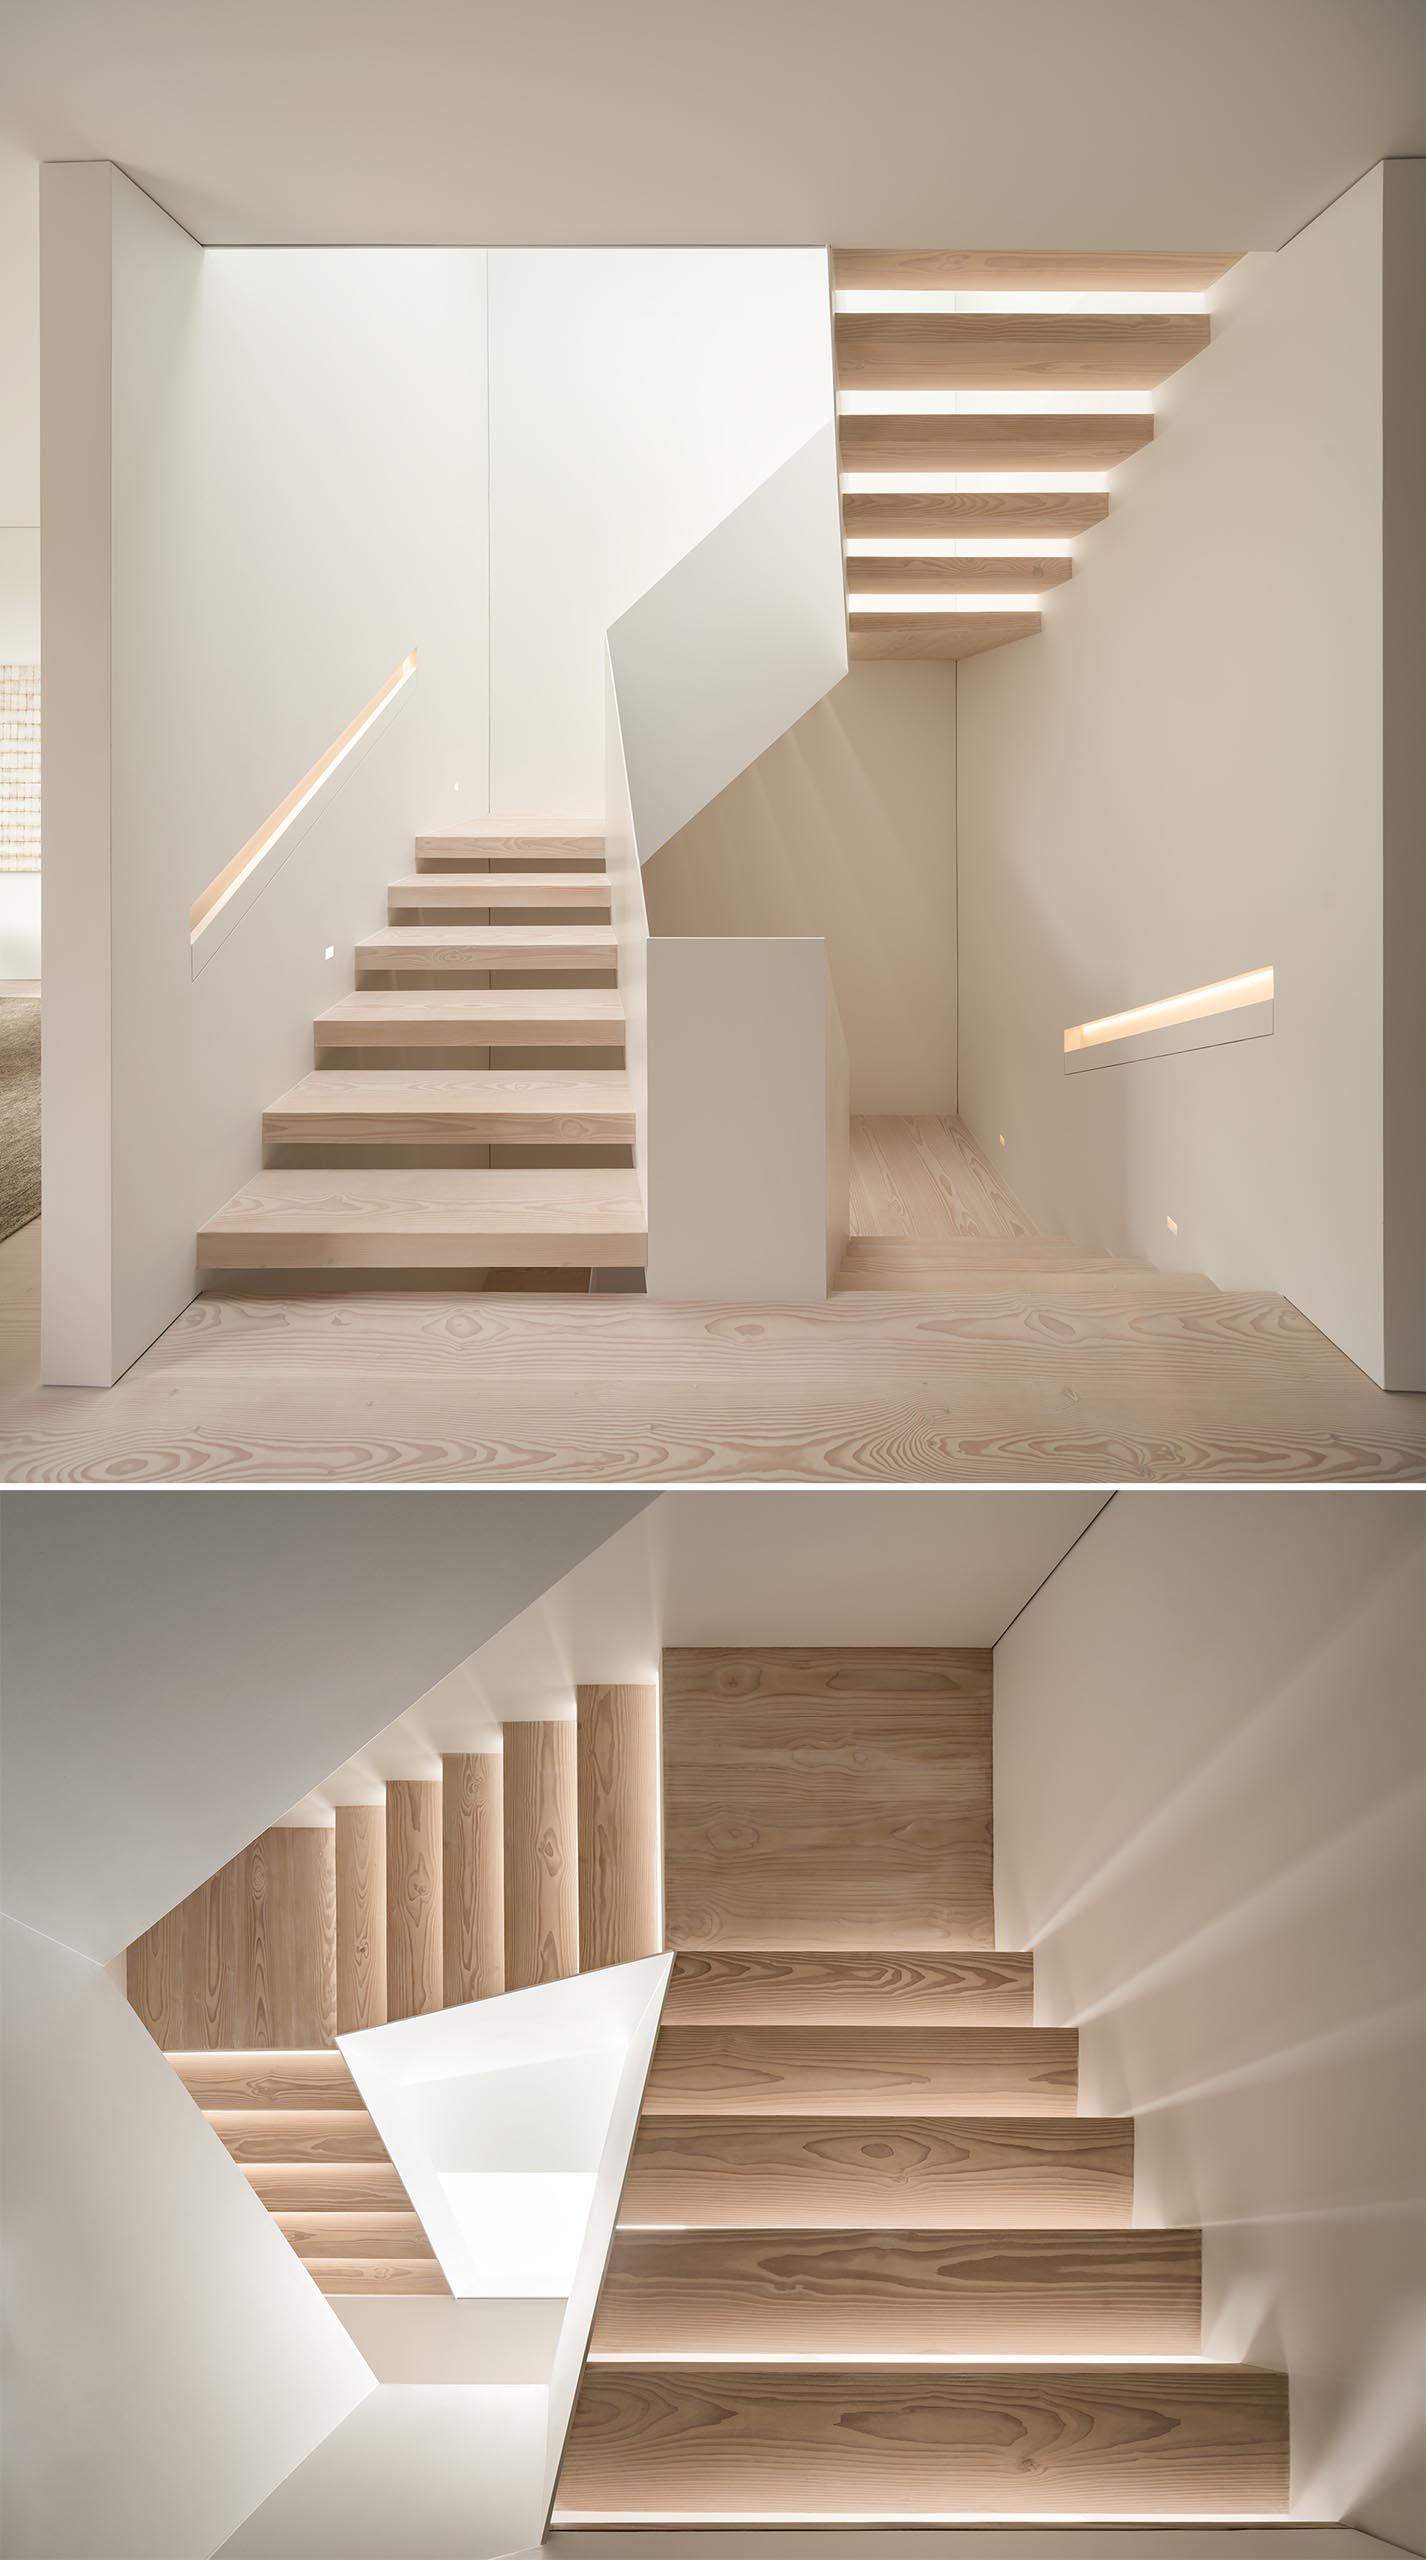 Лестницы из светлого дерева и белого цвета имеют встроенные поручни со скрытой подсветкой.